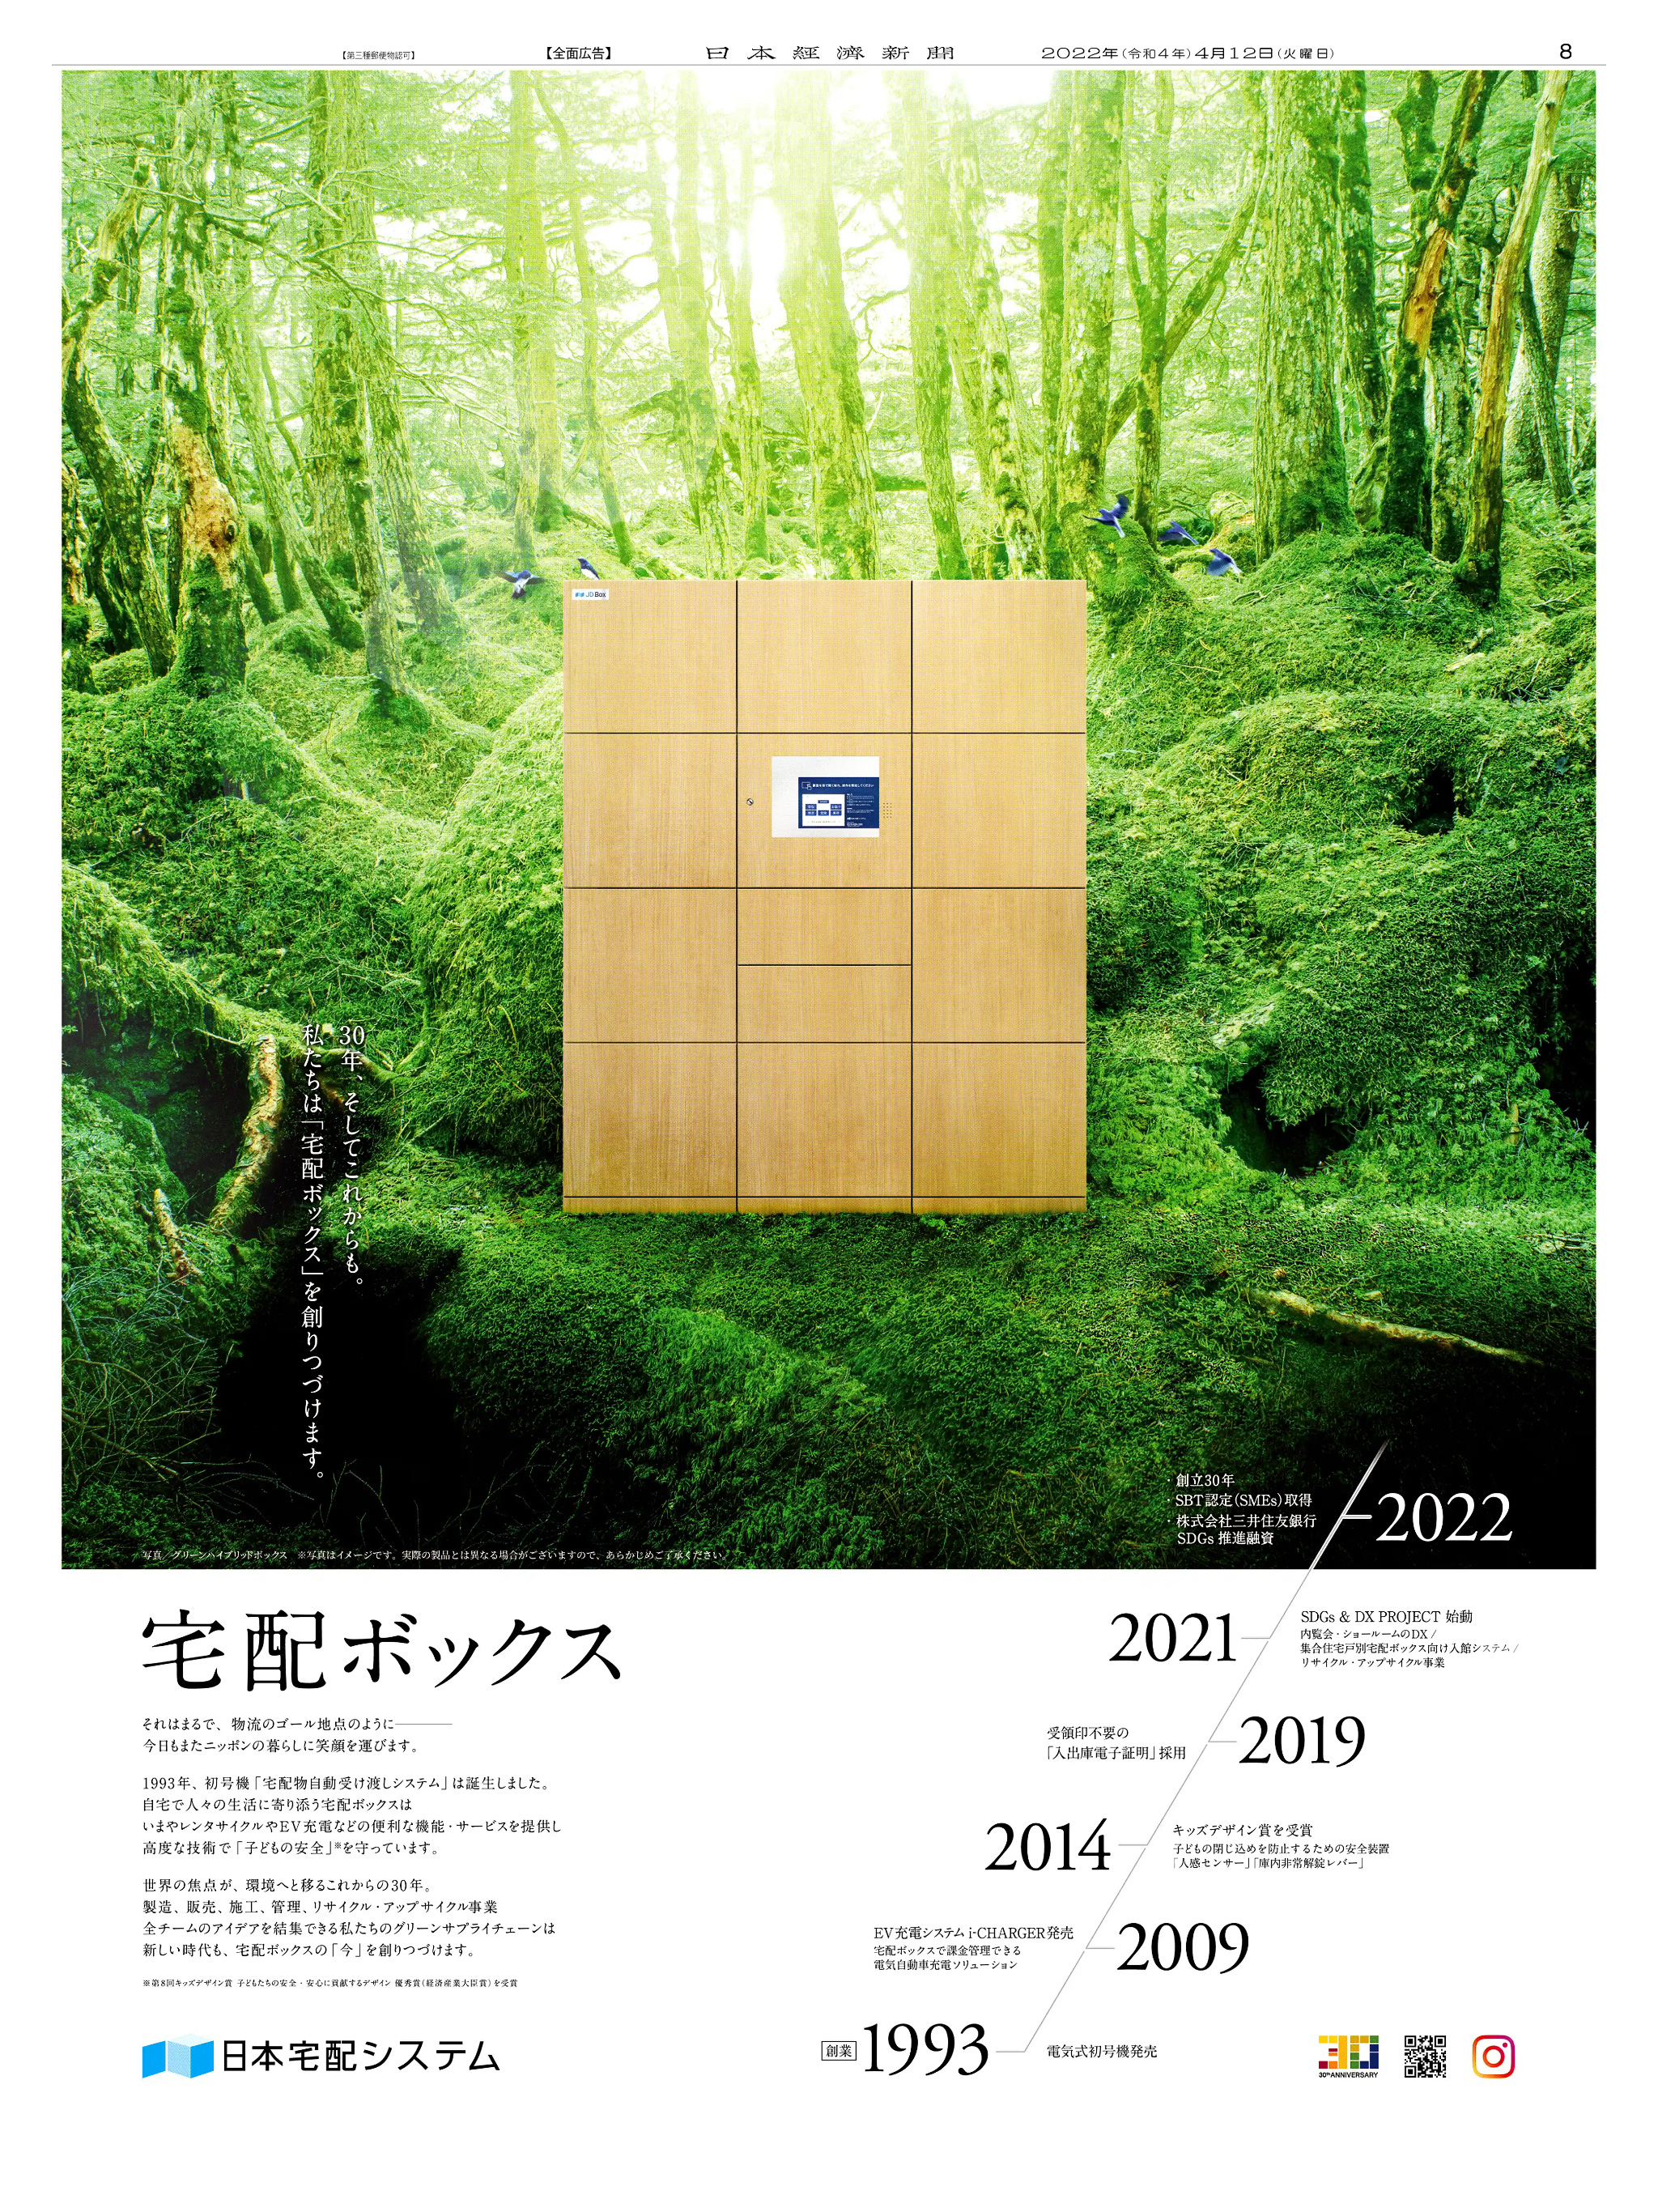 周年記念広告事例 「日本宅配システム 創立30周年」